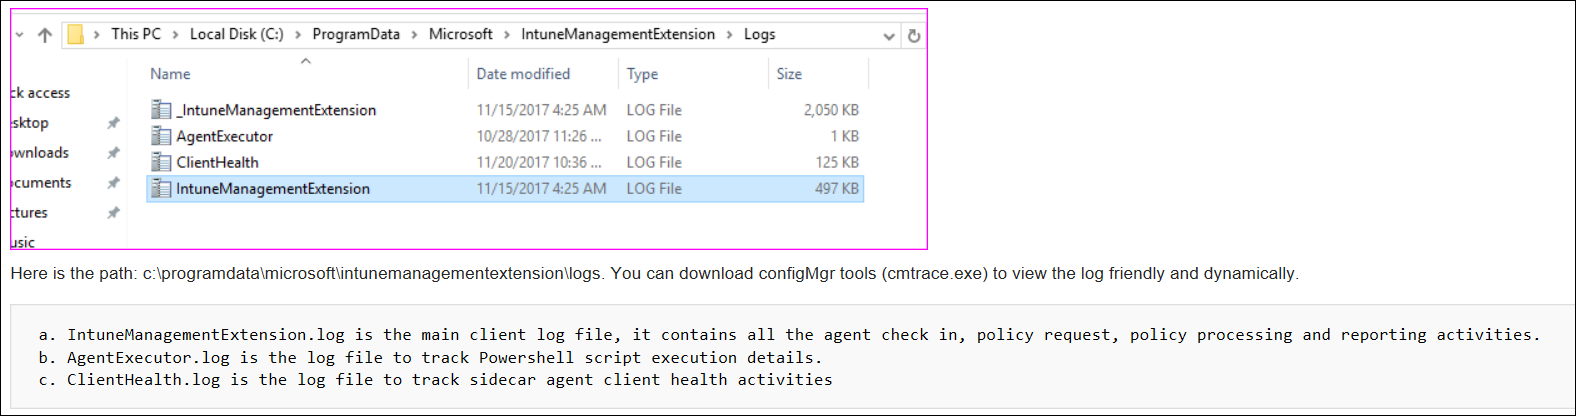 Microsoft Intune 中的螢幕快照或範例 cmtrace 代理程序記錄